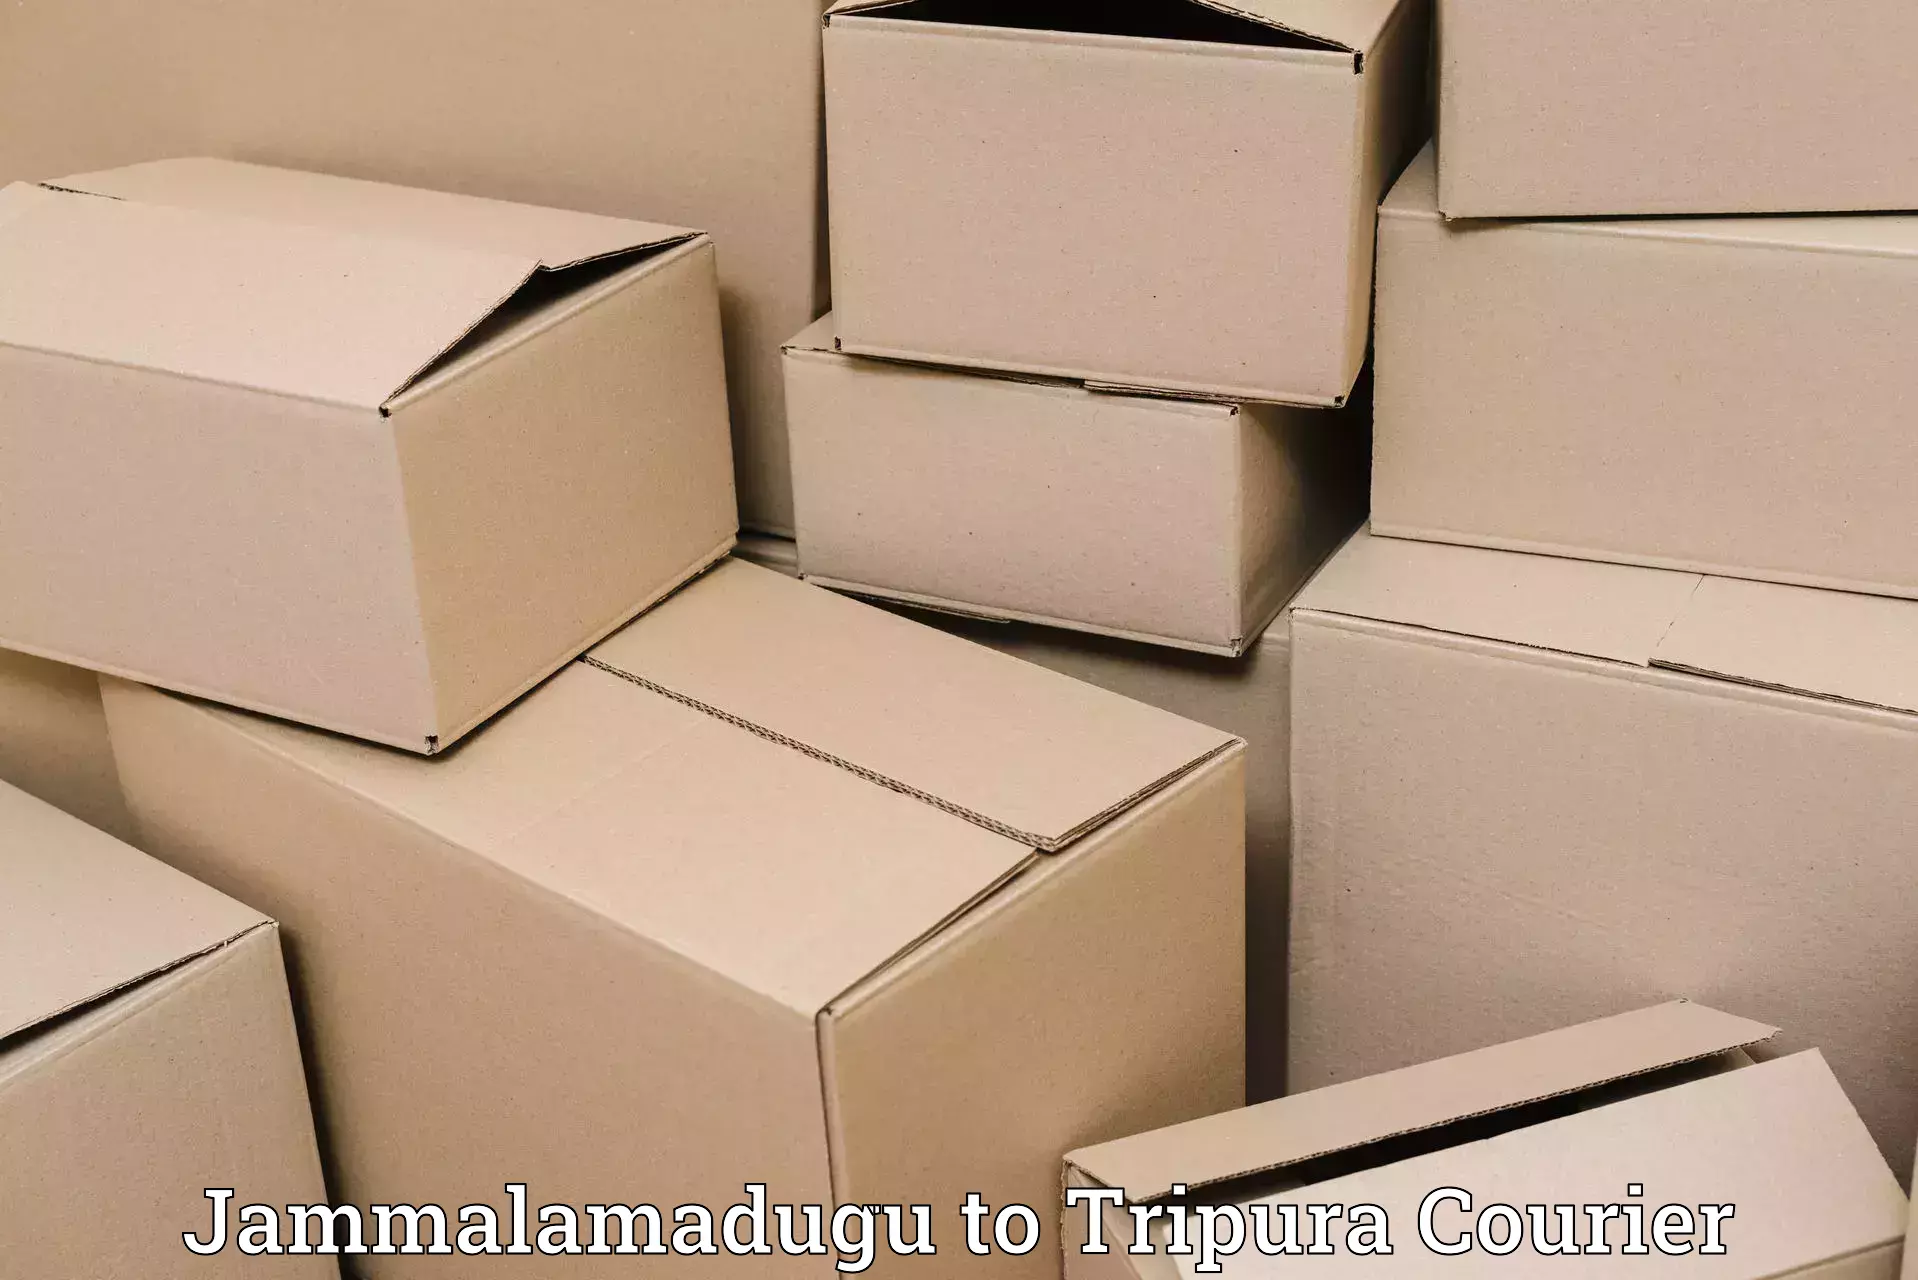 Cost-effective courier options Jammalamadugu to Ambassa